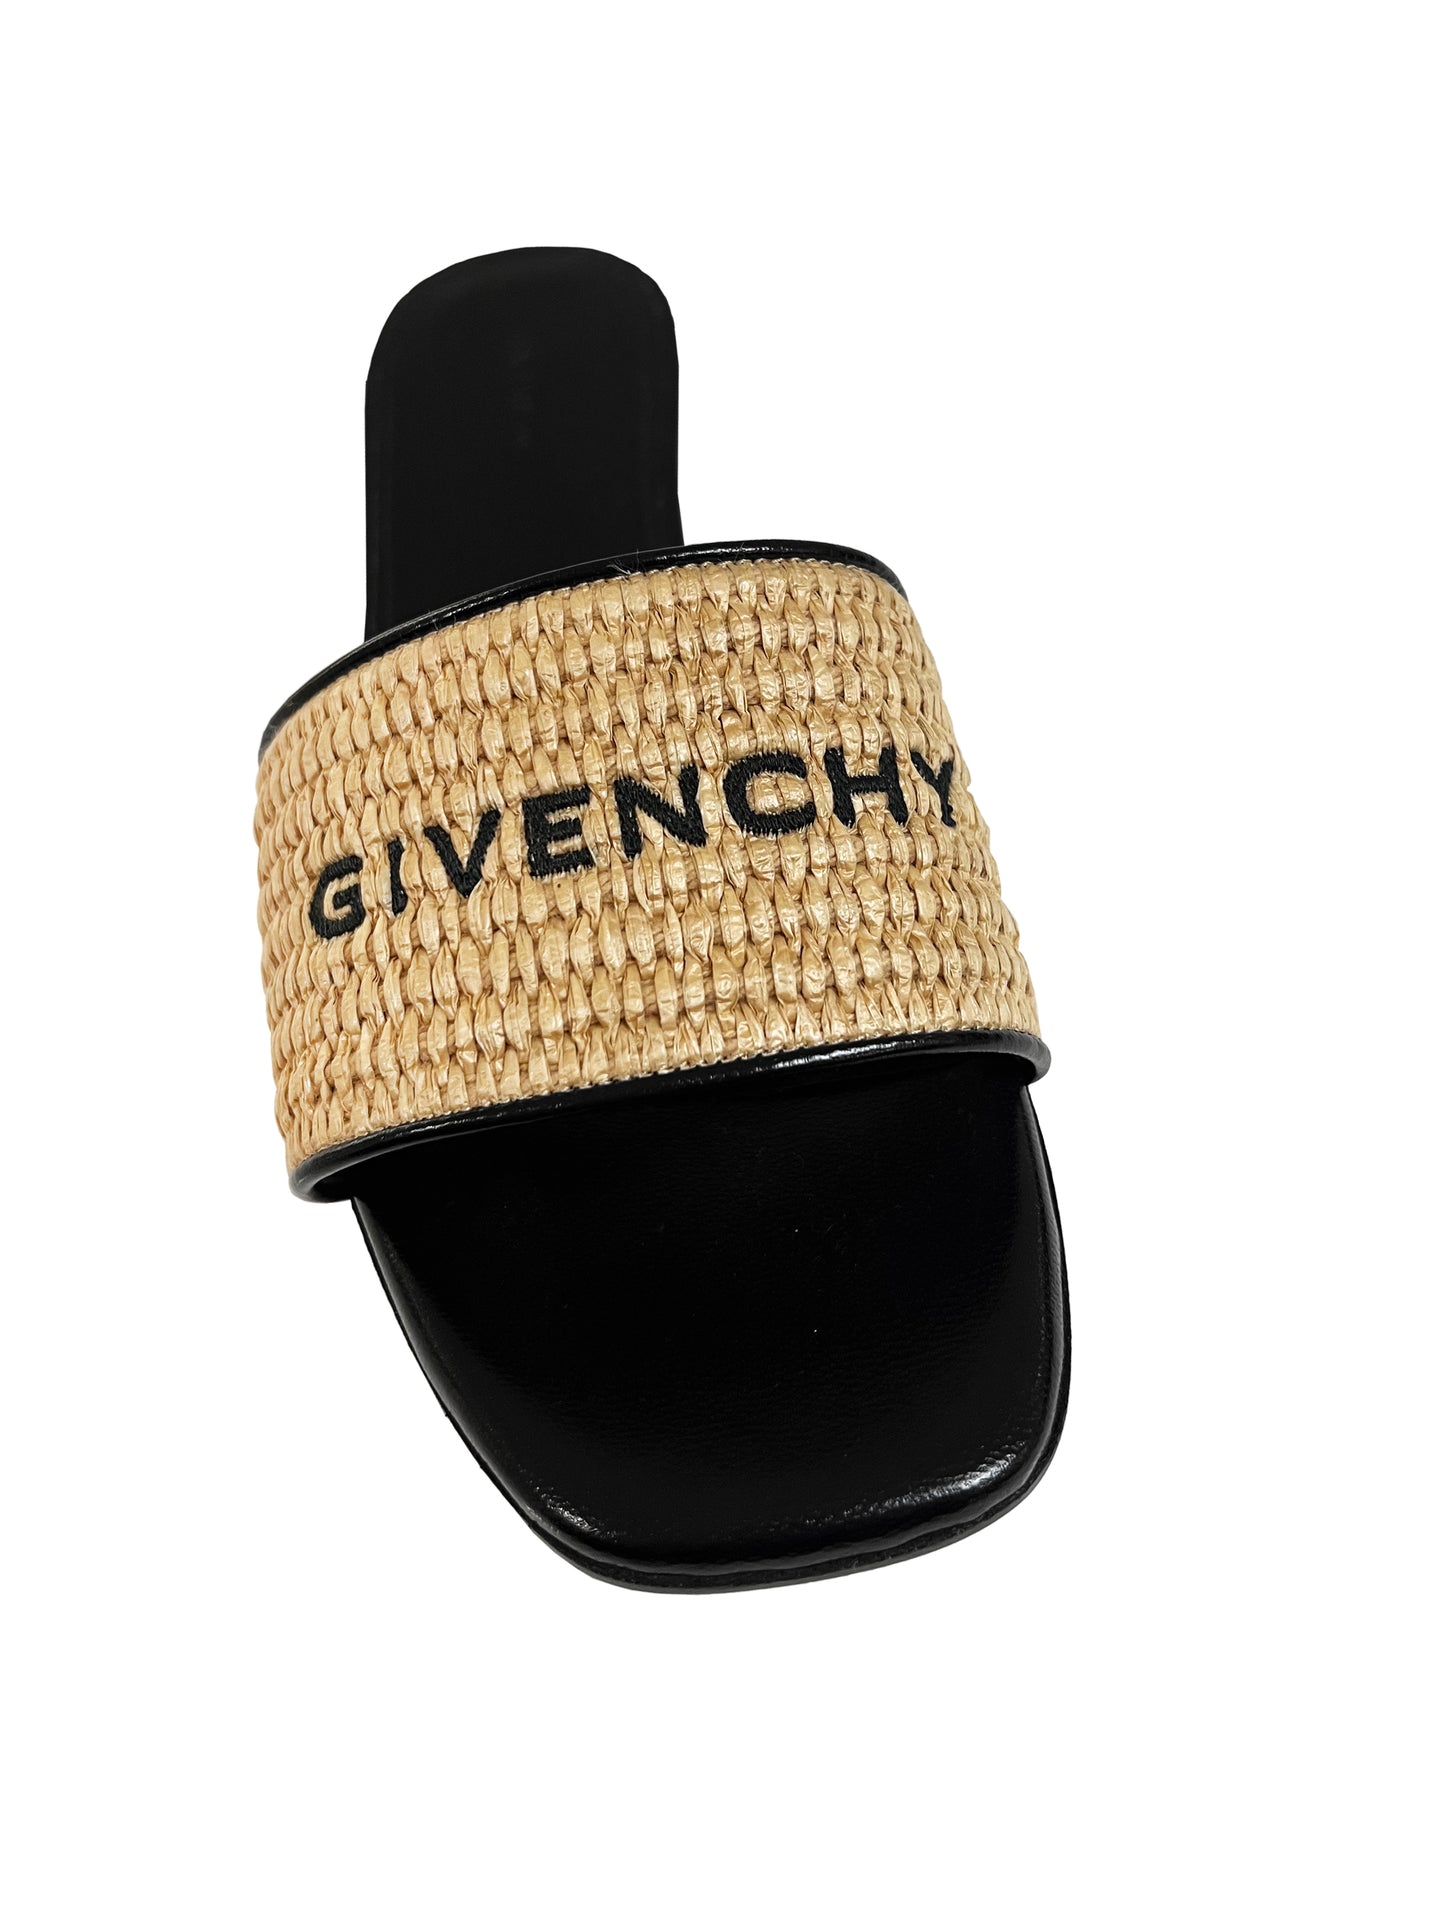 Givenchy 4G Flache Sandalen Schwarz/Beige